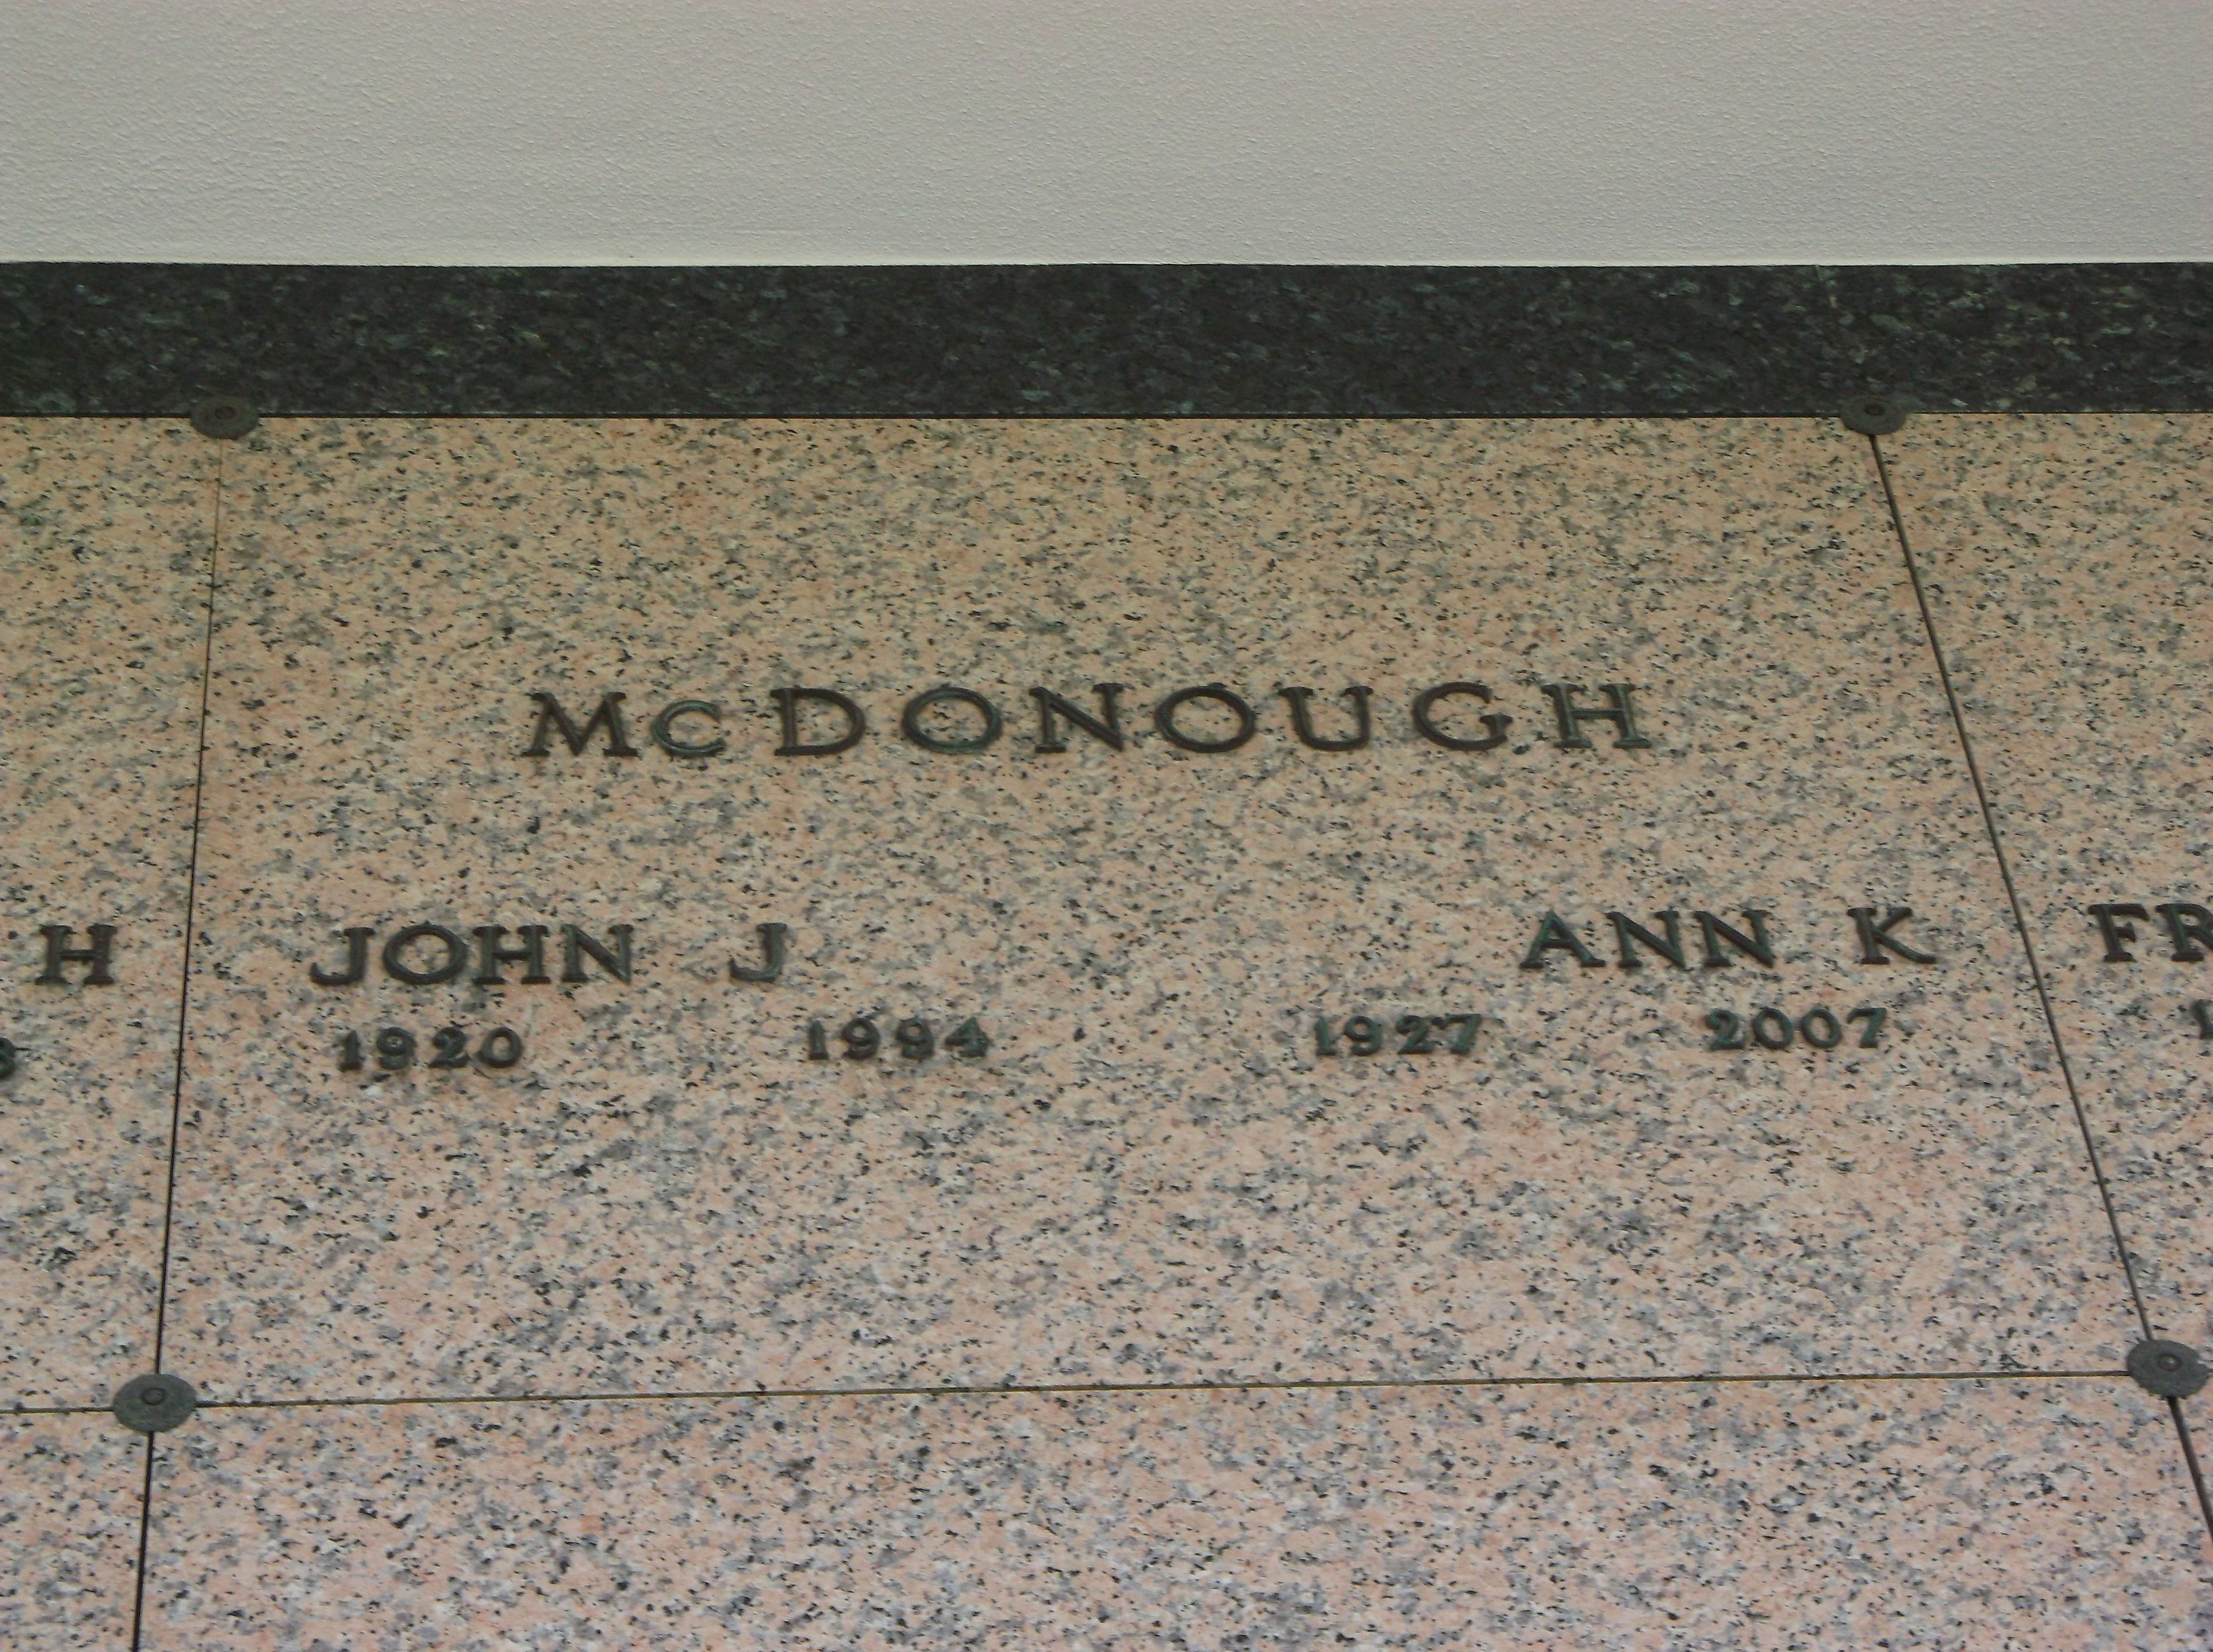 Ann K McDonough